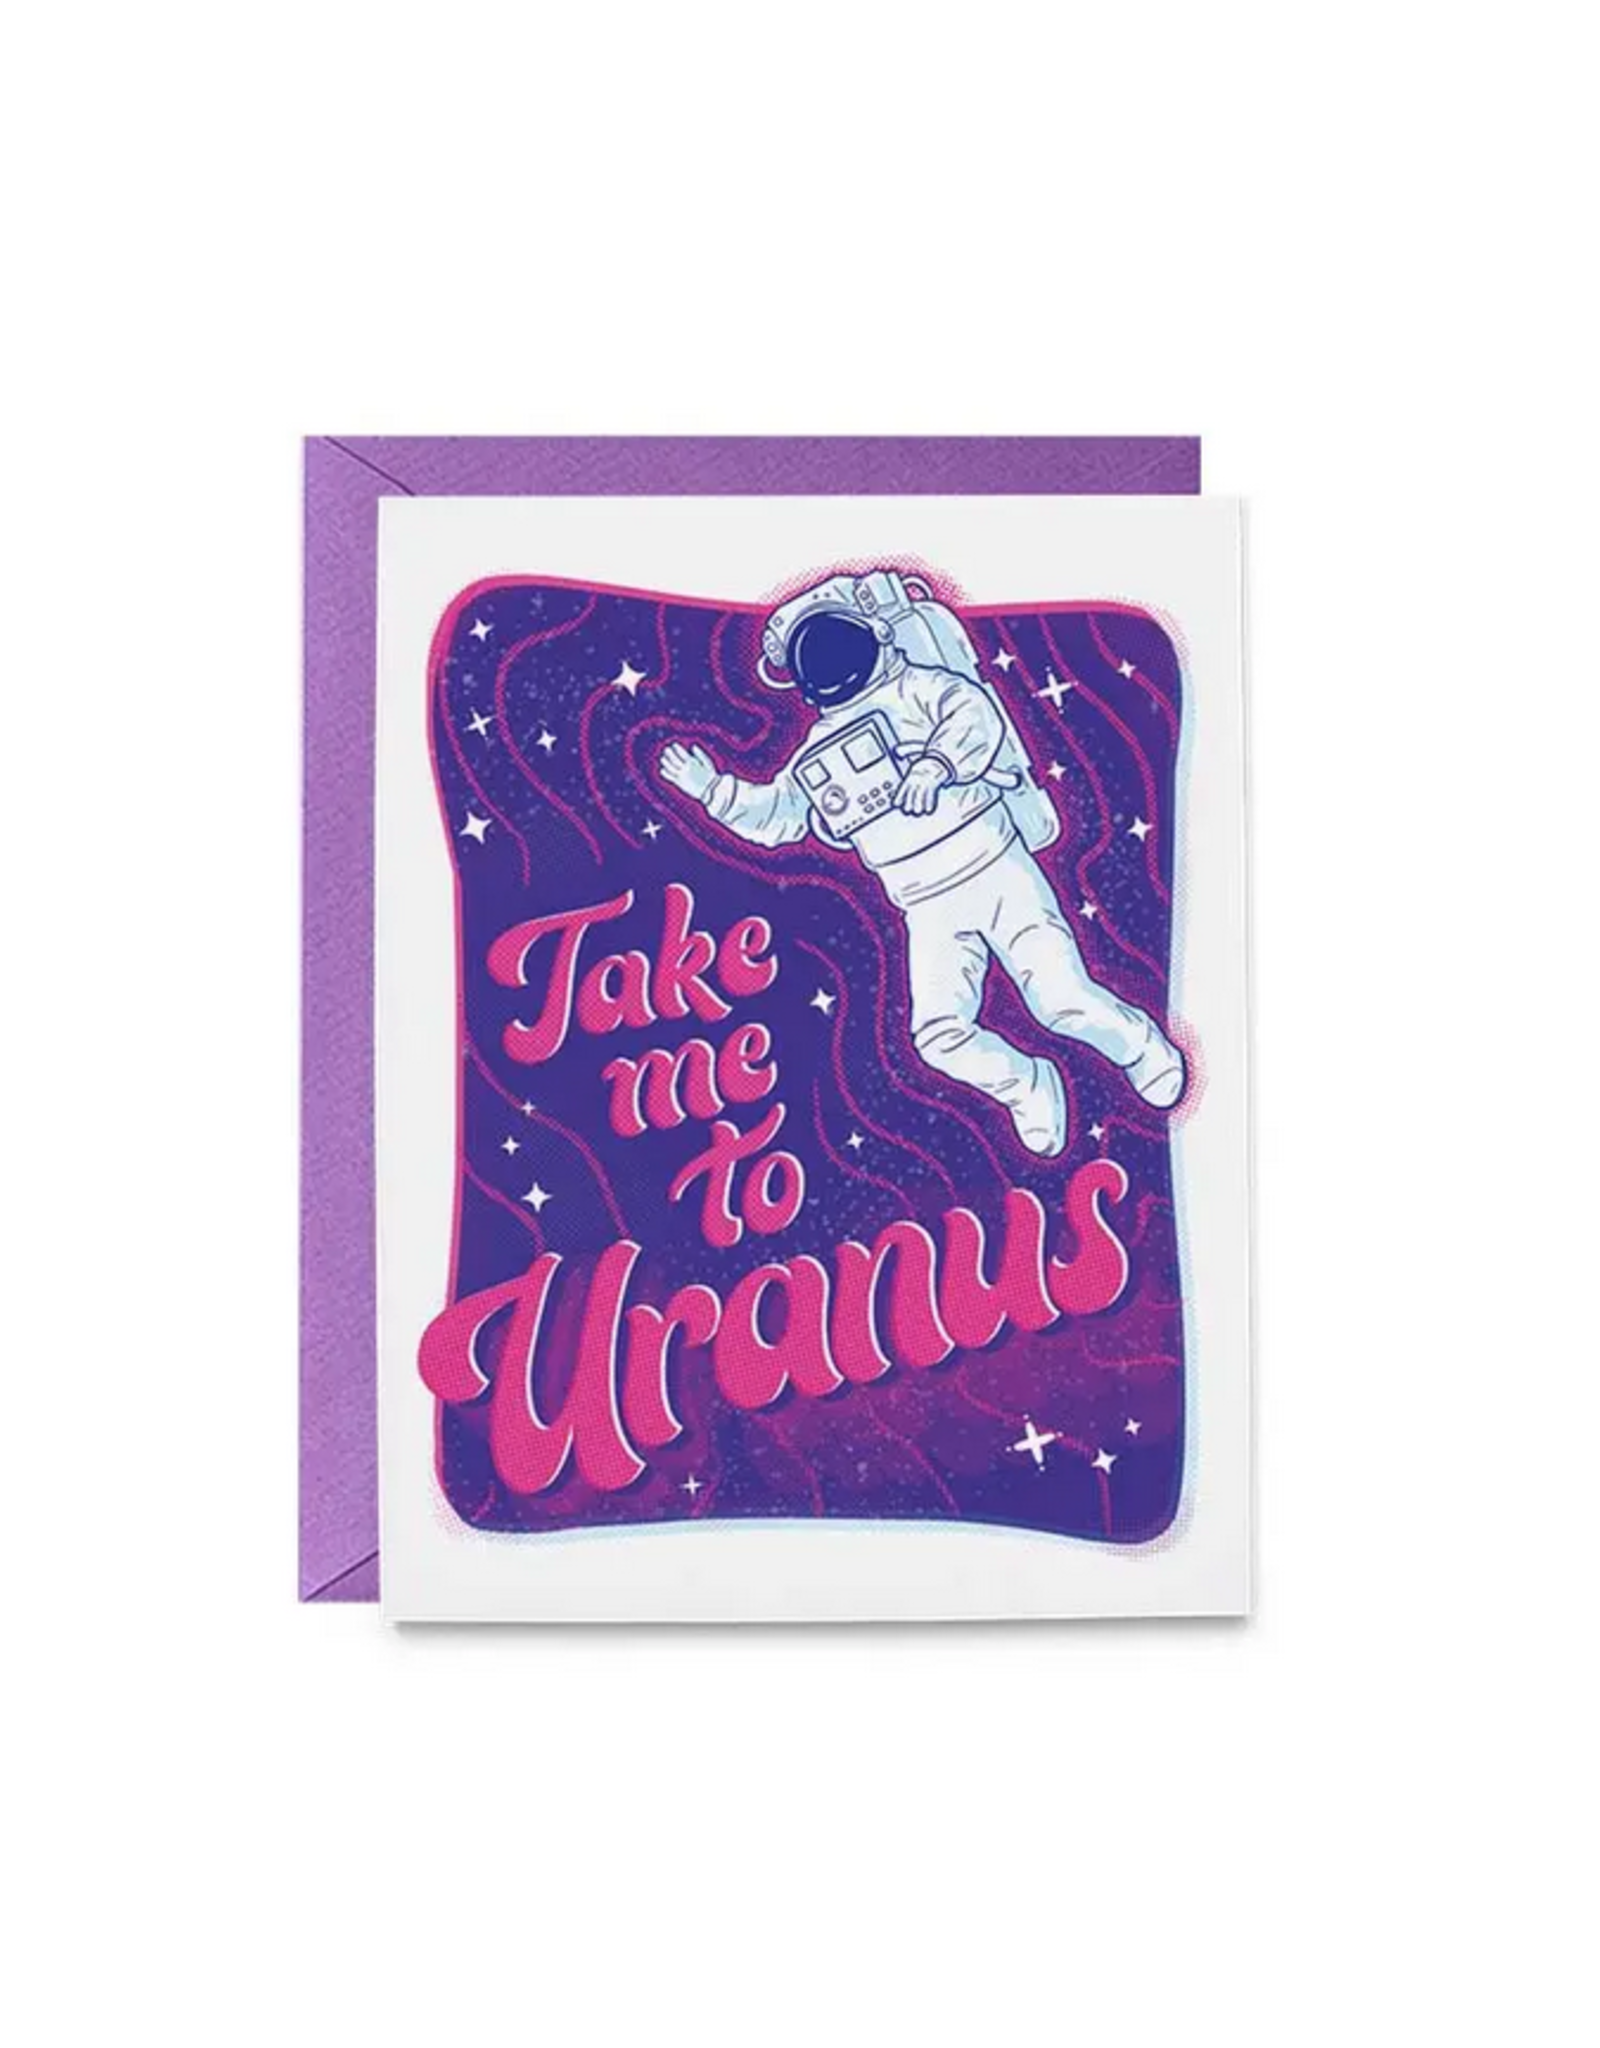 Take Me To Uranus Greeting Card